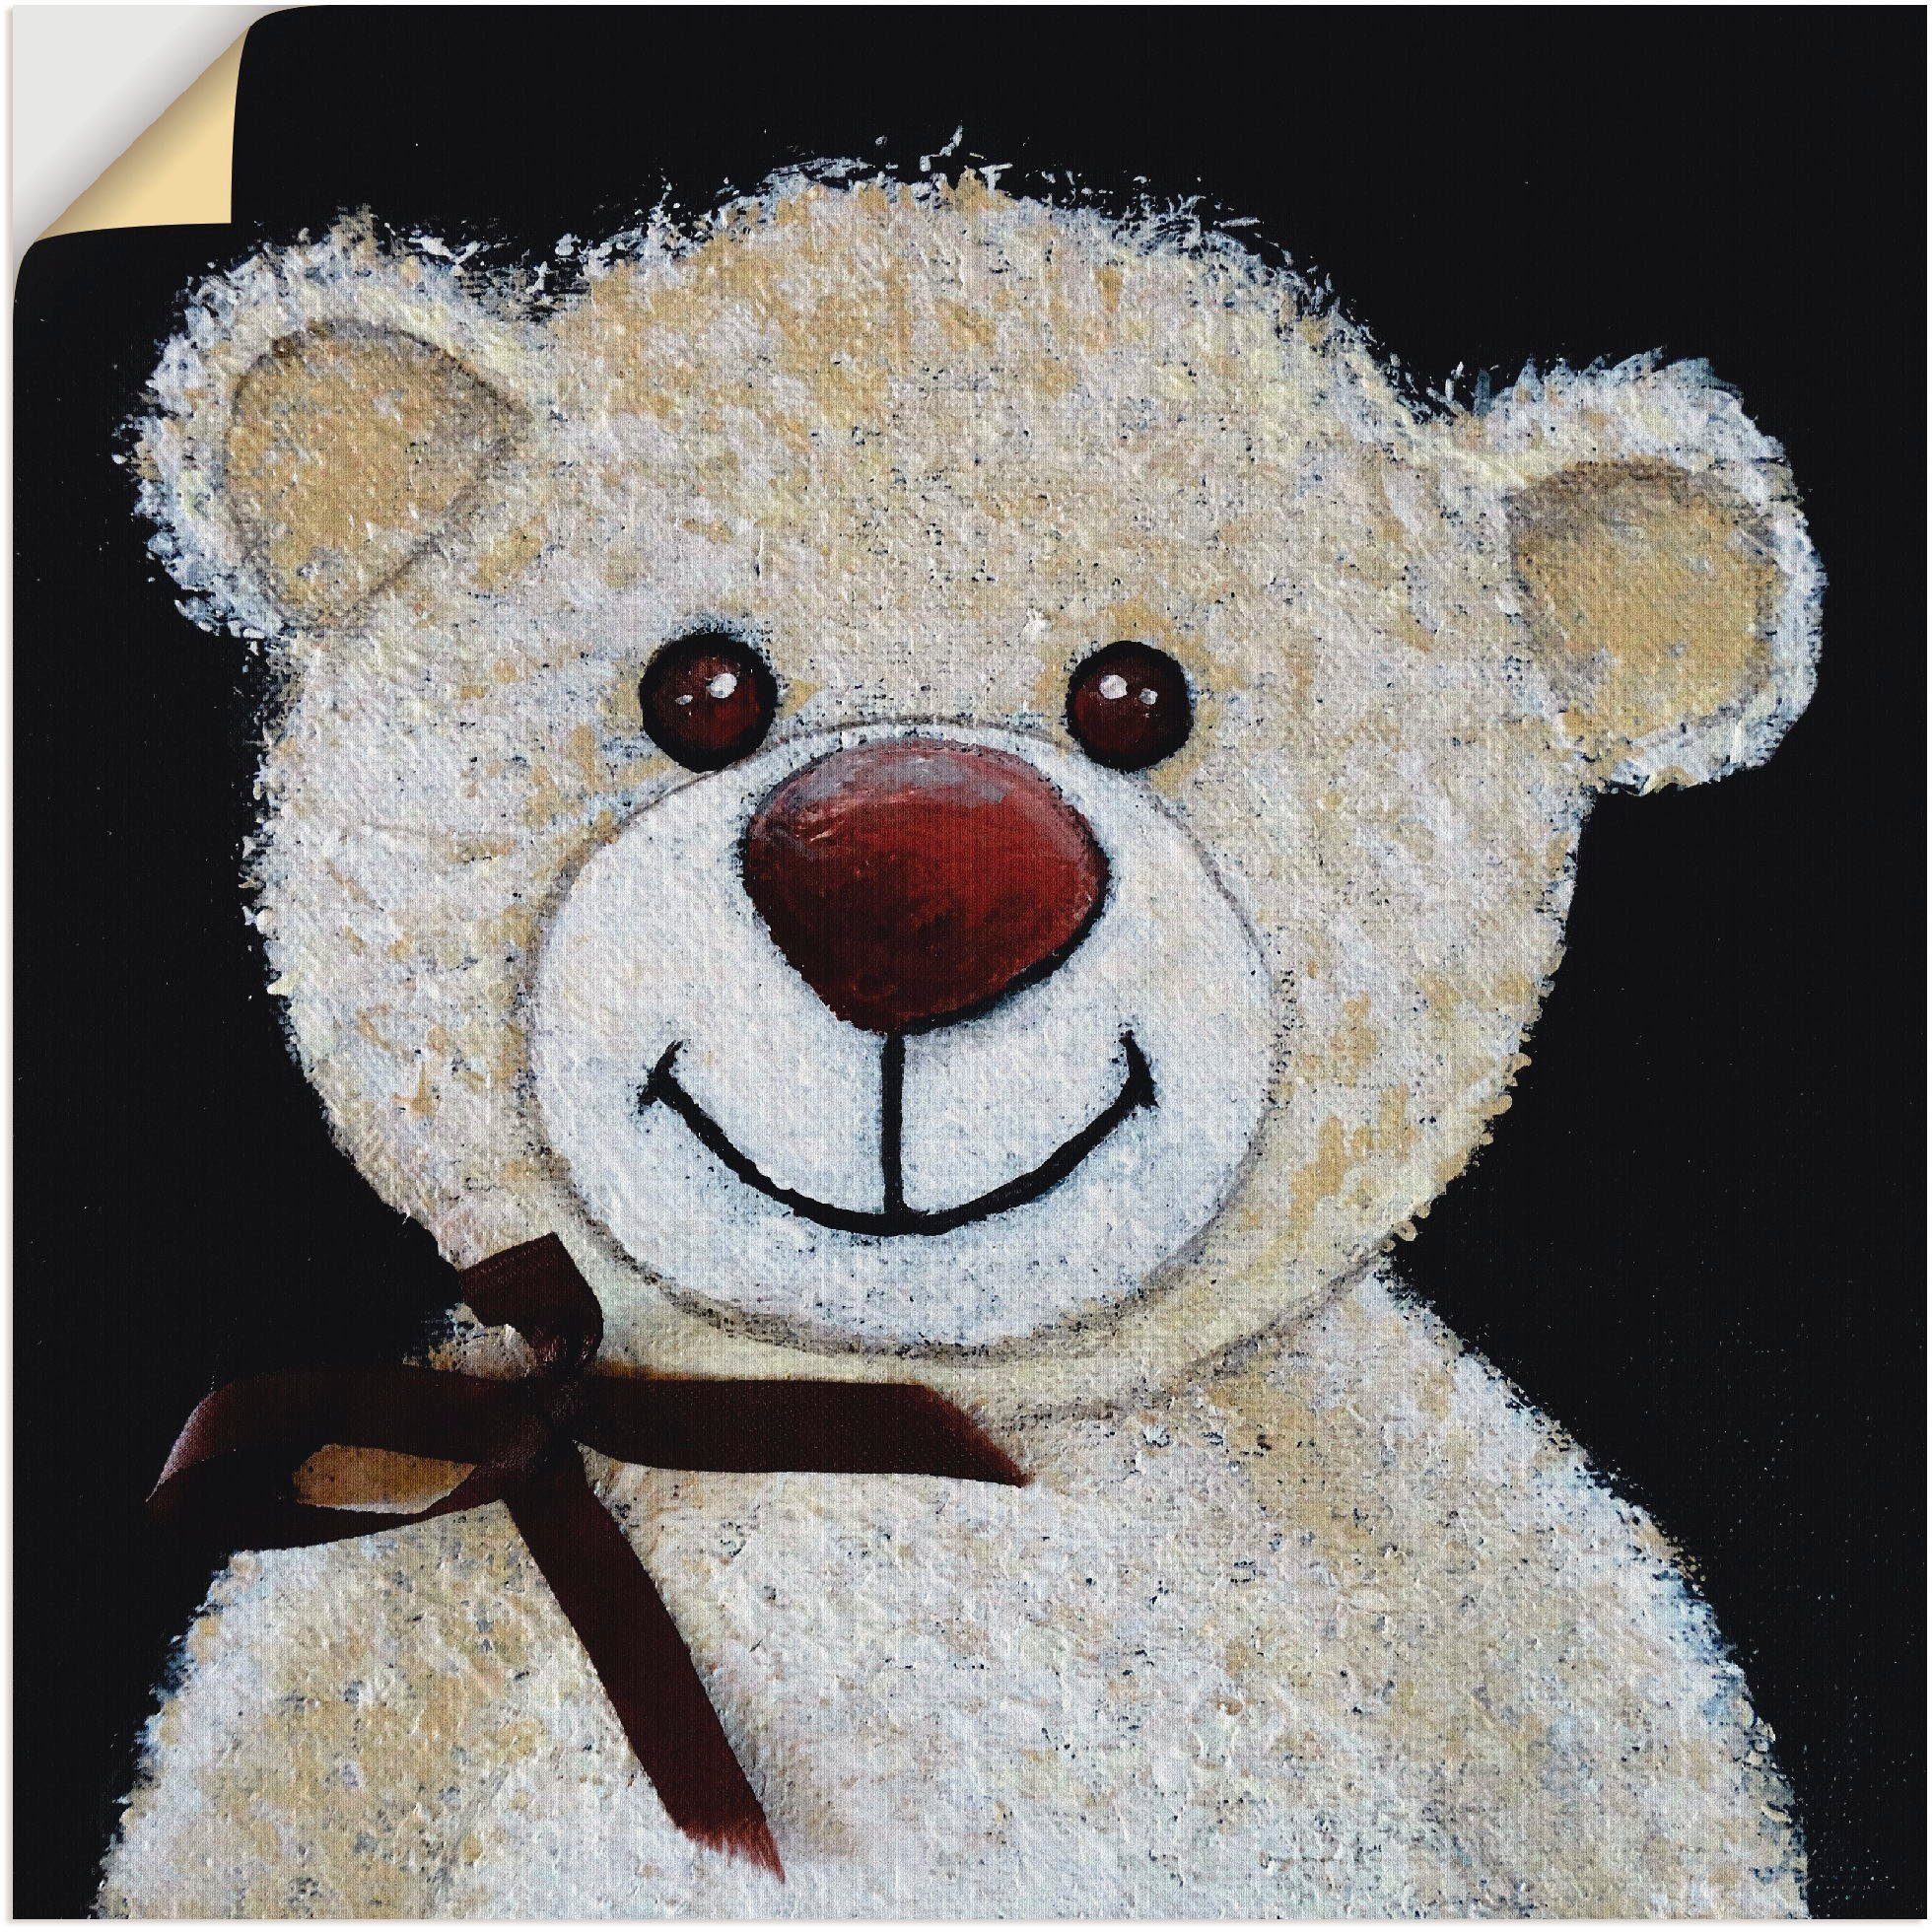 Artland Wandfolie Teddybär, Spielzeuge (1 St), selbstklebend